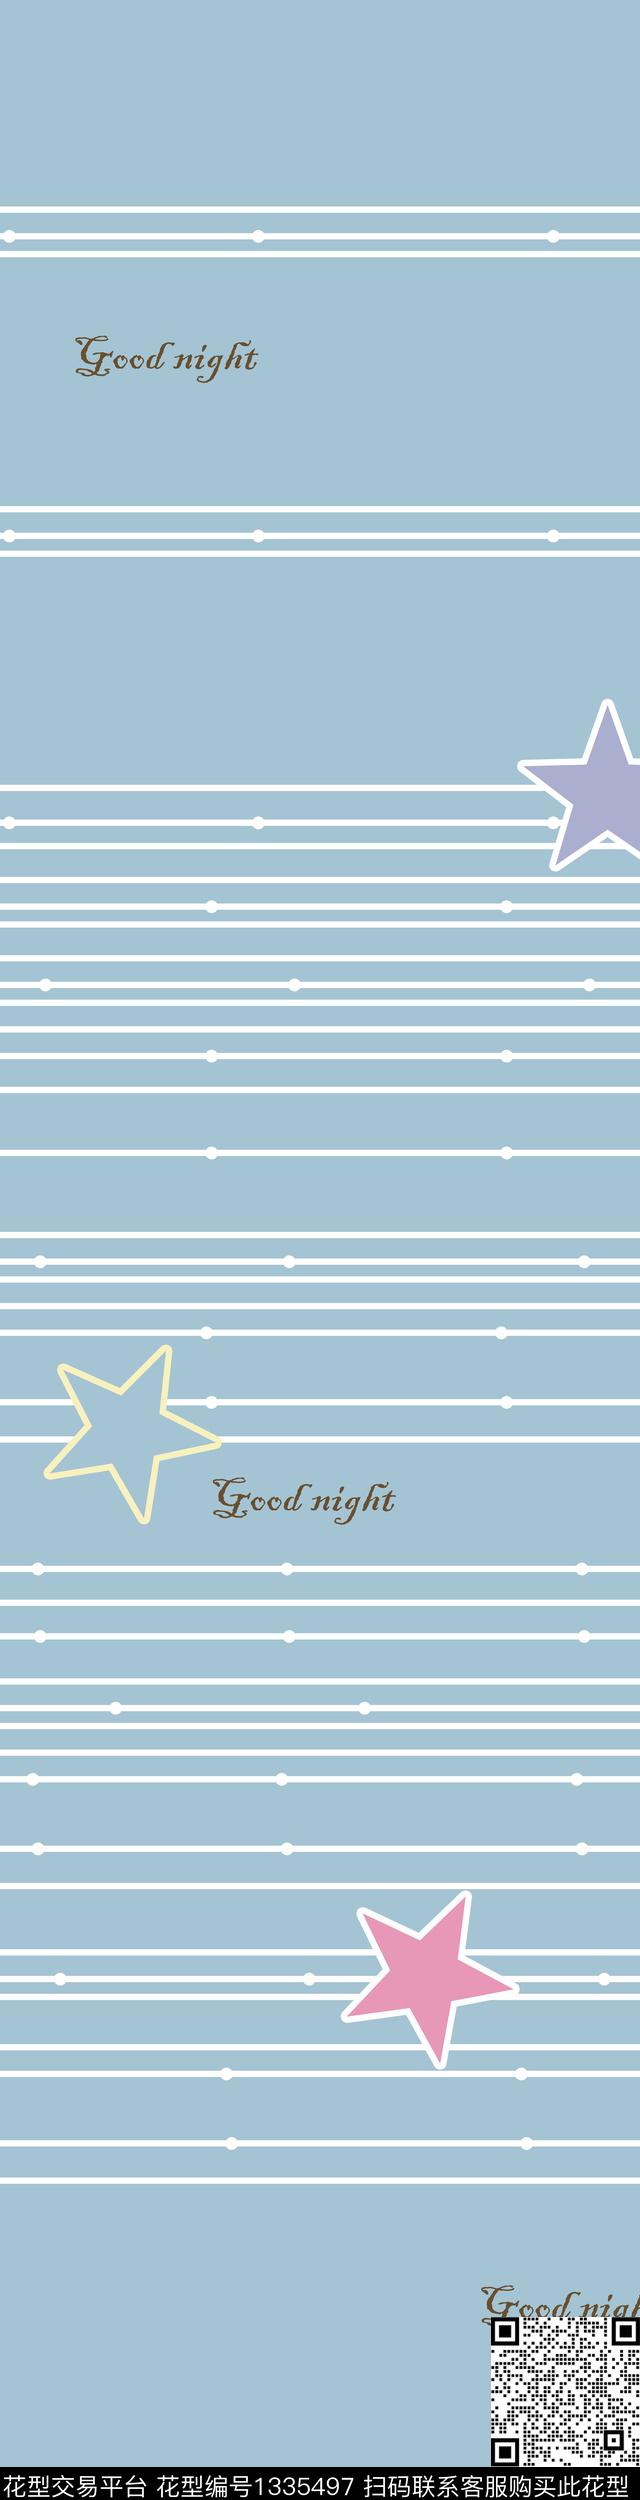 xingxing.jpg - 1335497 - 字母 星星 线条 - 传统印花花型 － 床品花型设计 － 瓦栏